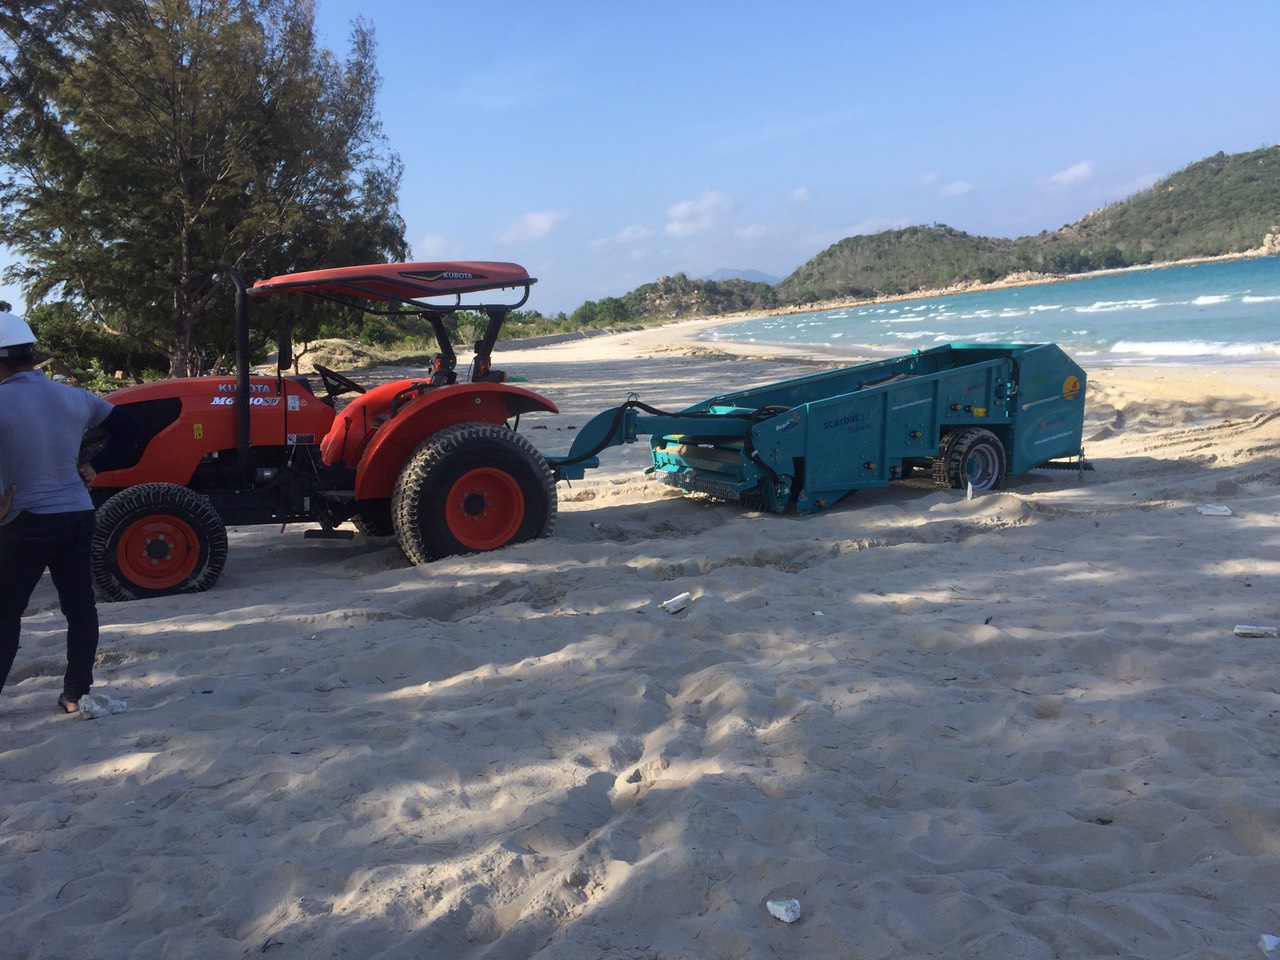 Bàn giao máy sàng cát làm sạch bãi biển Bình Tiên Golf and Resort